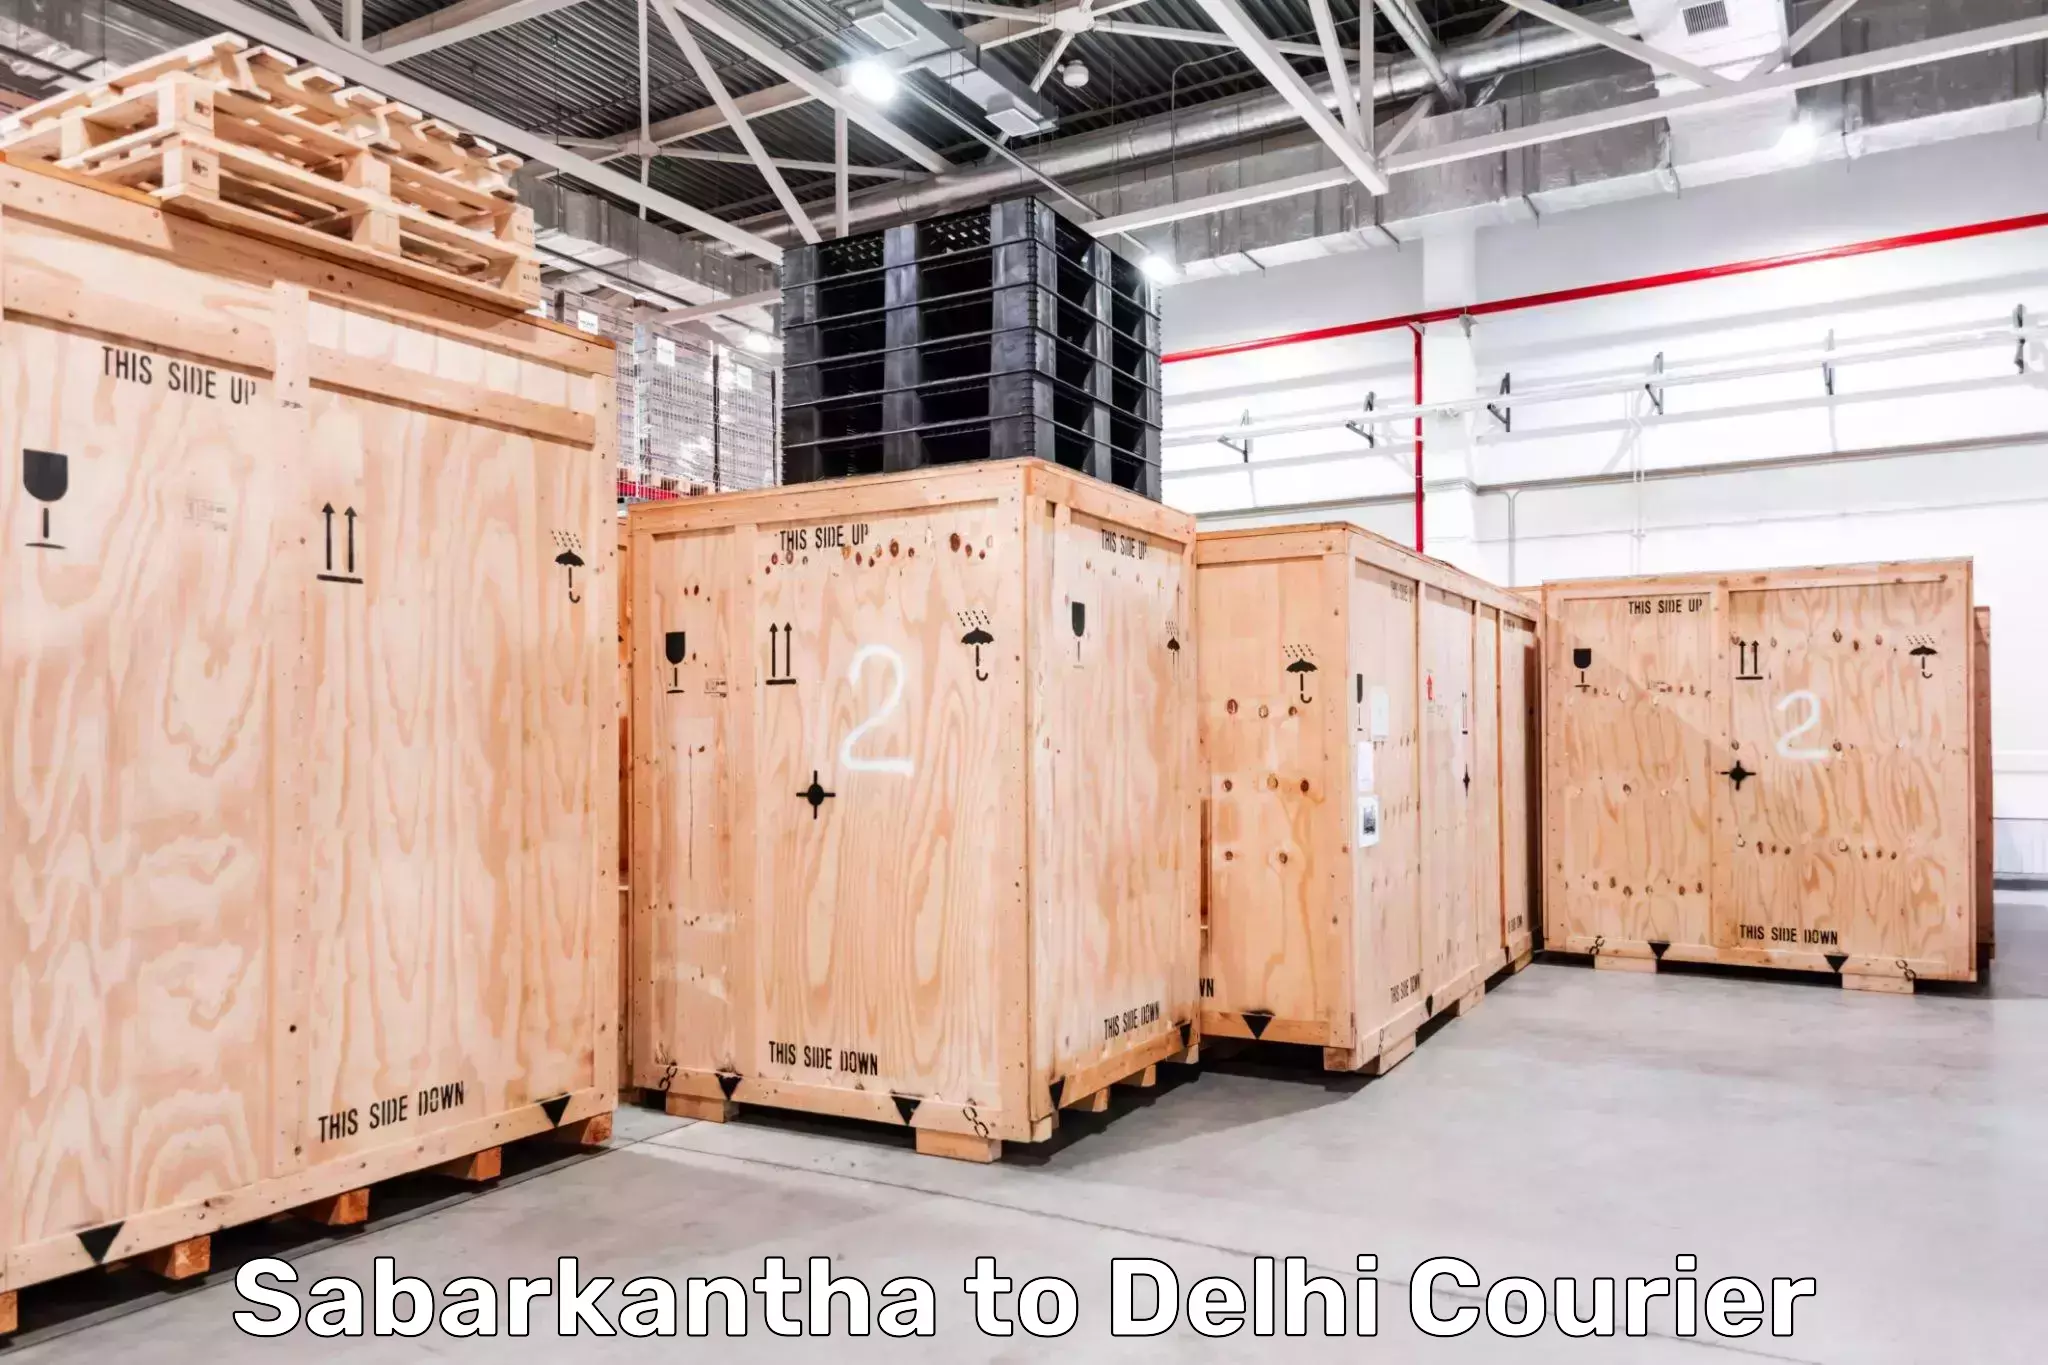 Digital courier platforms Sabarkantha to Jamia Millia Islamia New Delhi